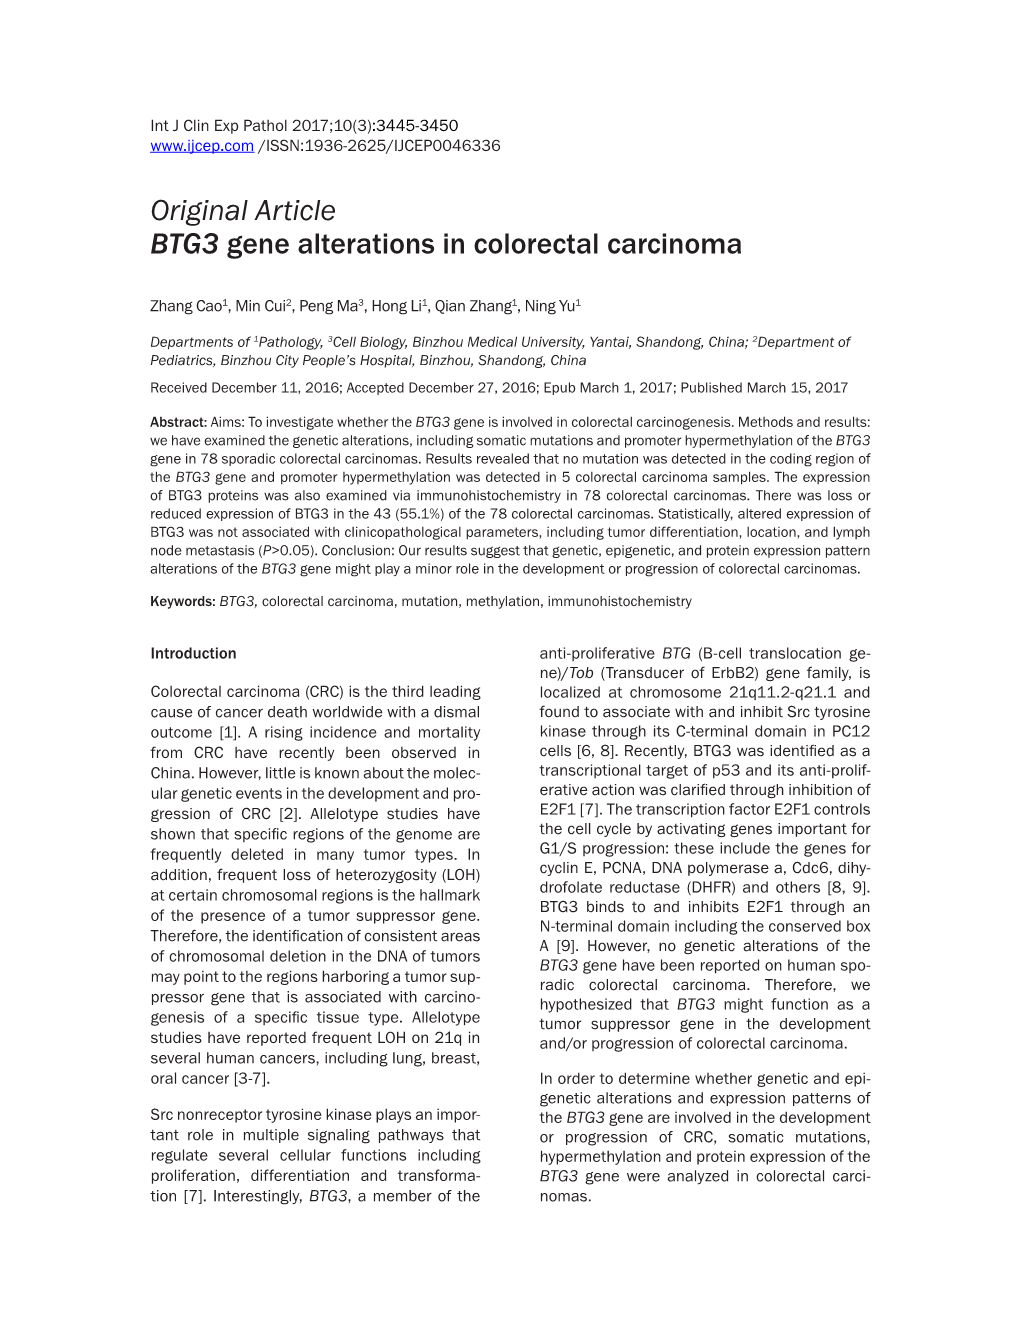 Original Article BTG3 Gene Alterations in Colorectal Carcinoma